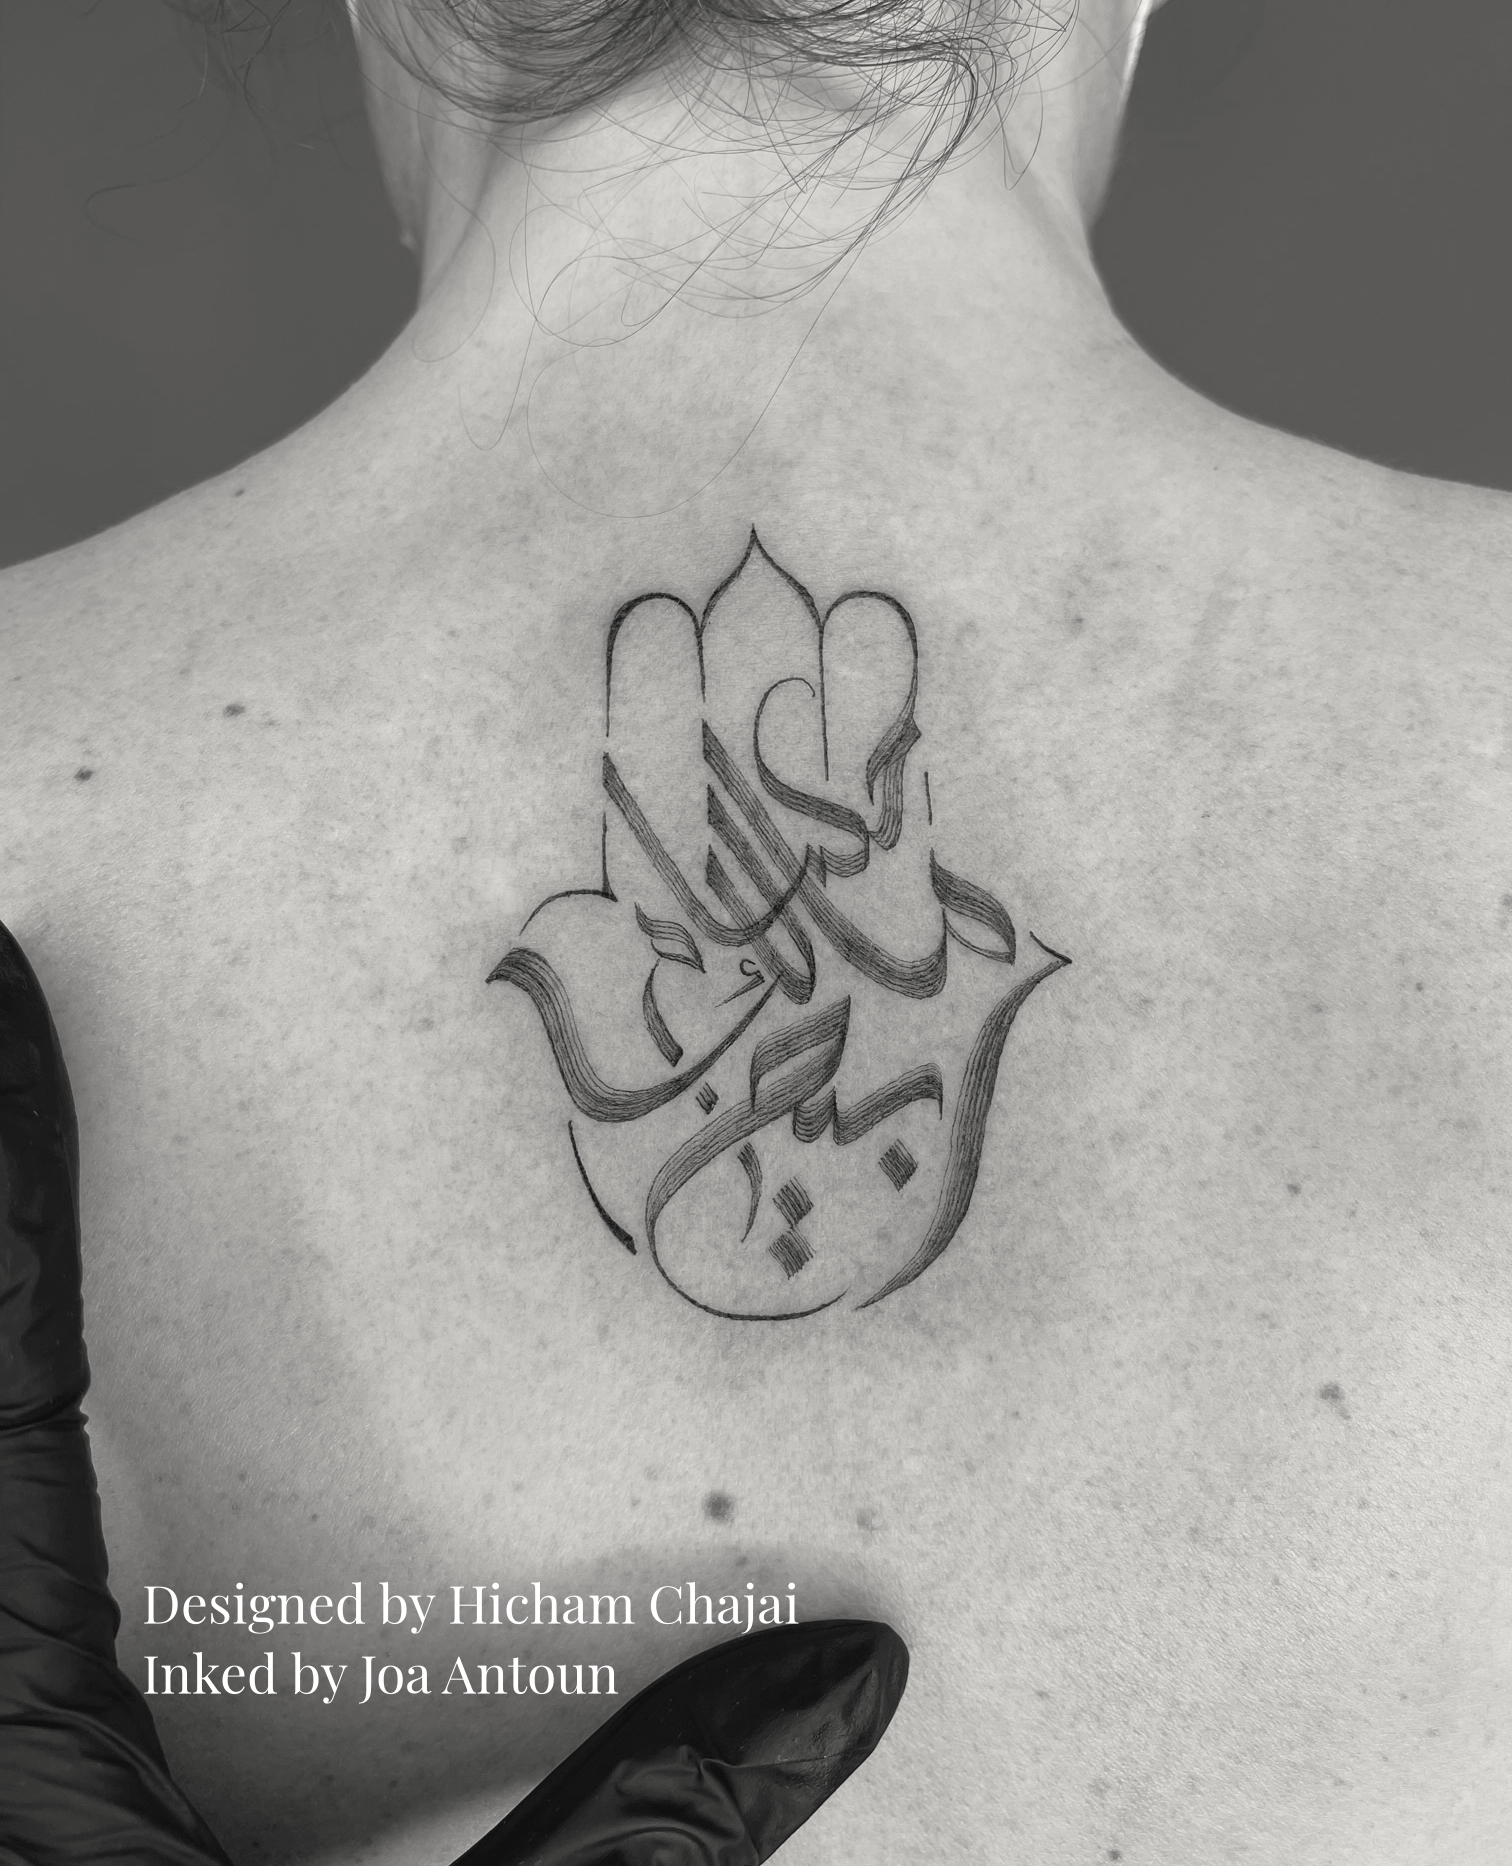 Allah Curses She Who Gets Tattooed